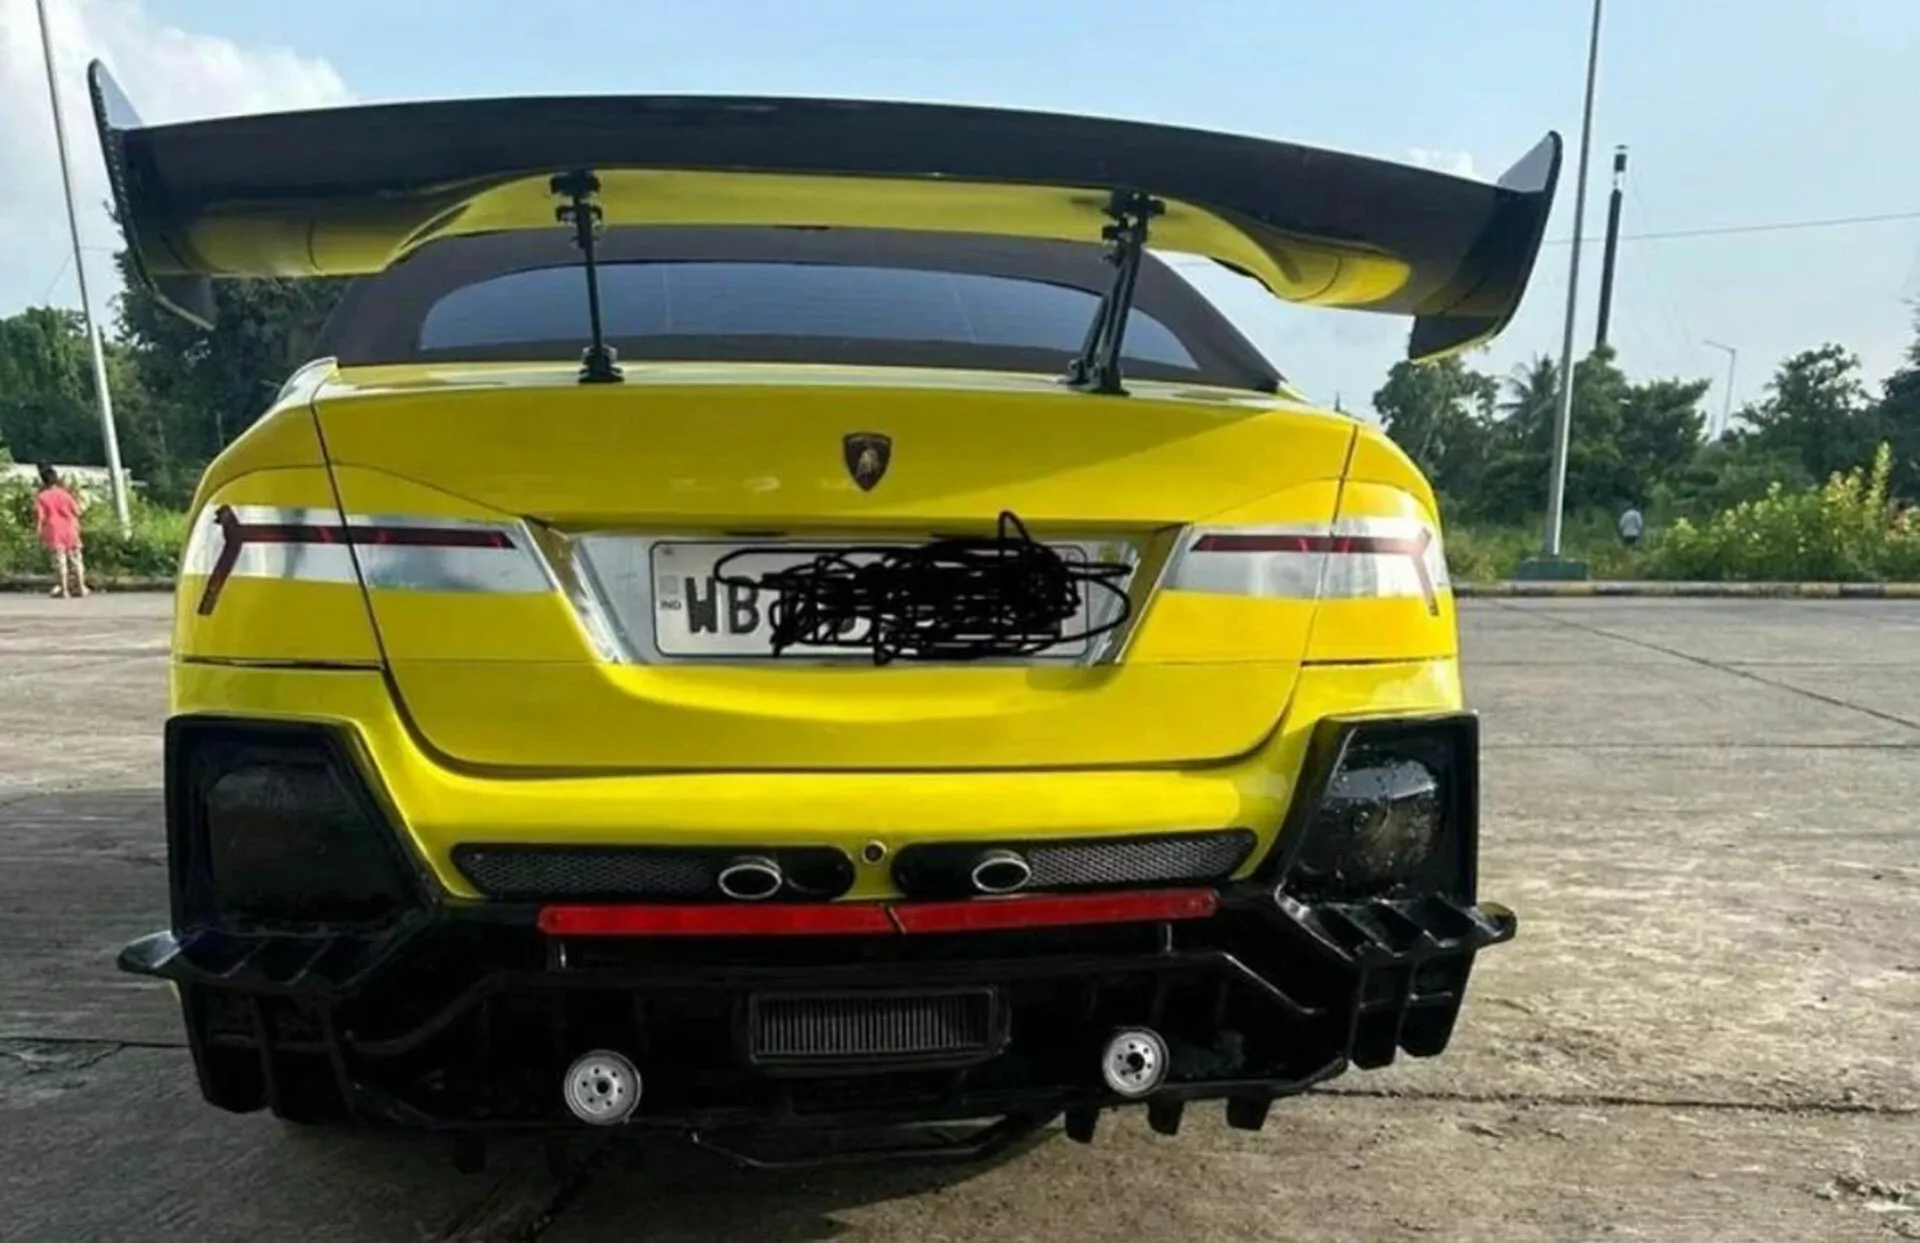 Lamborghini Honda